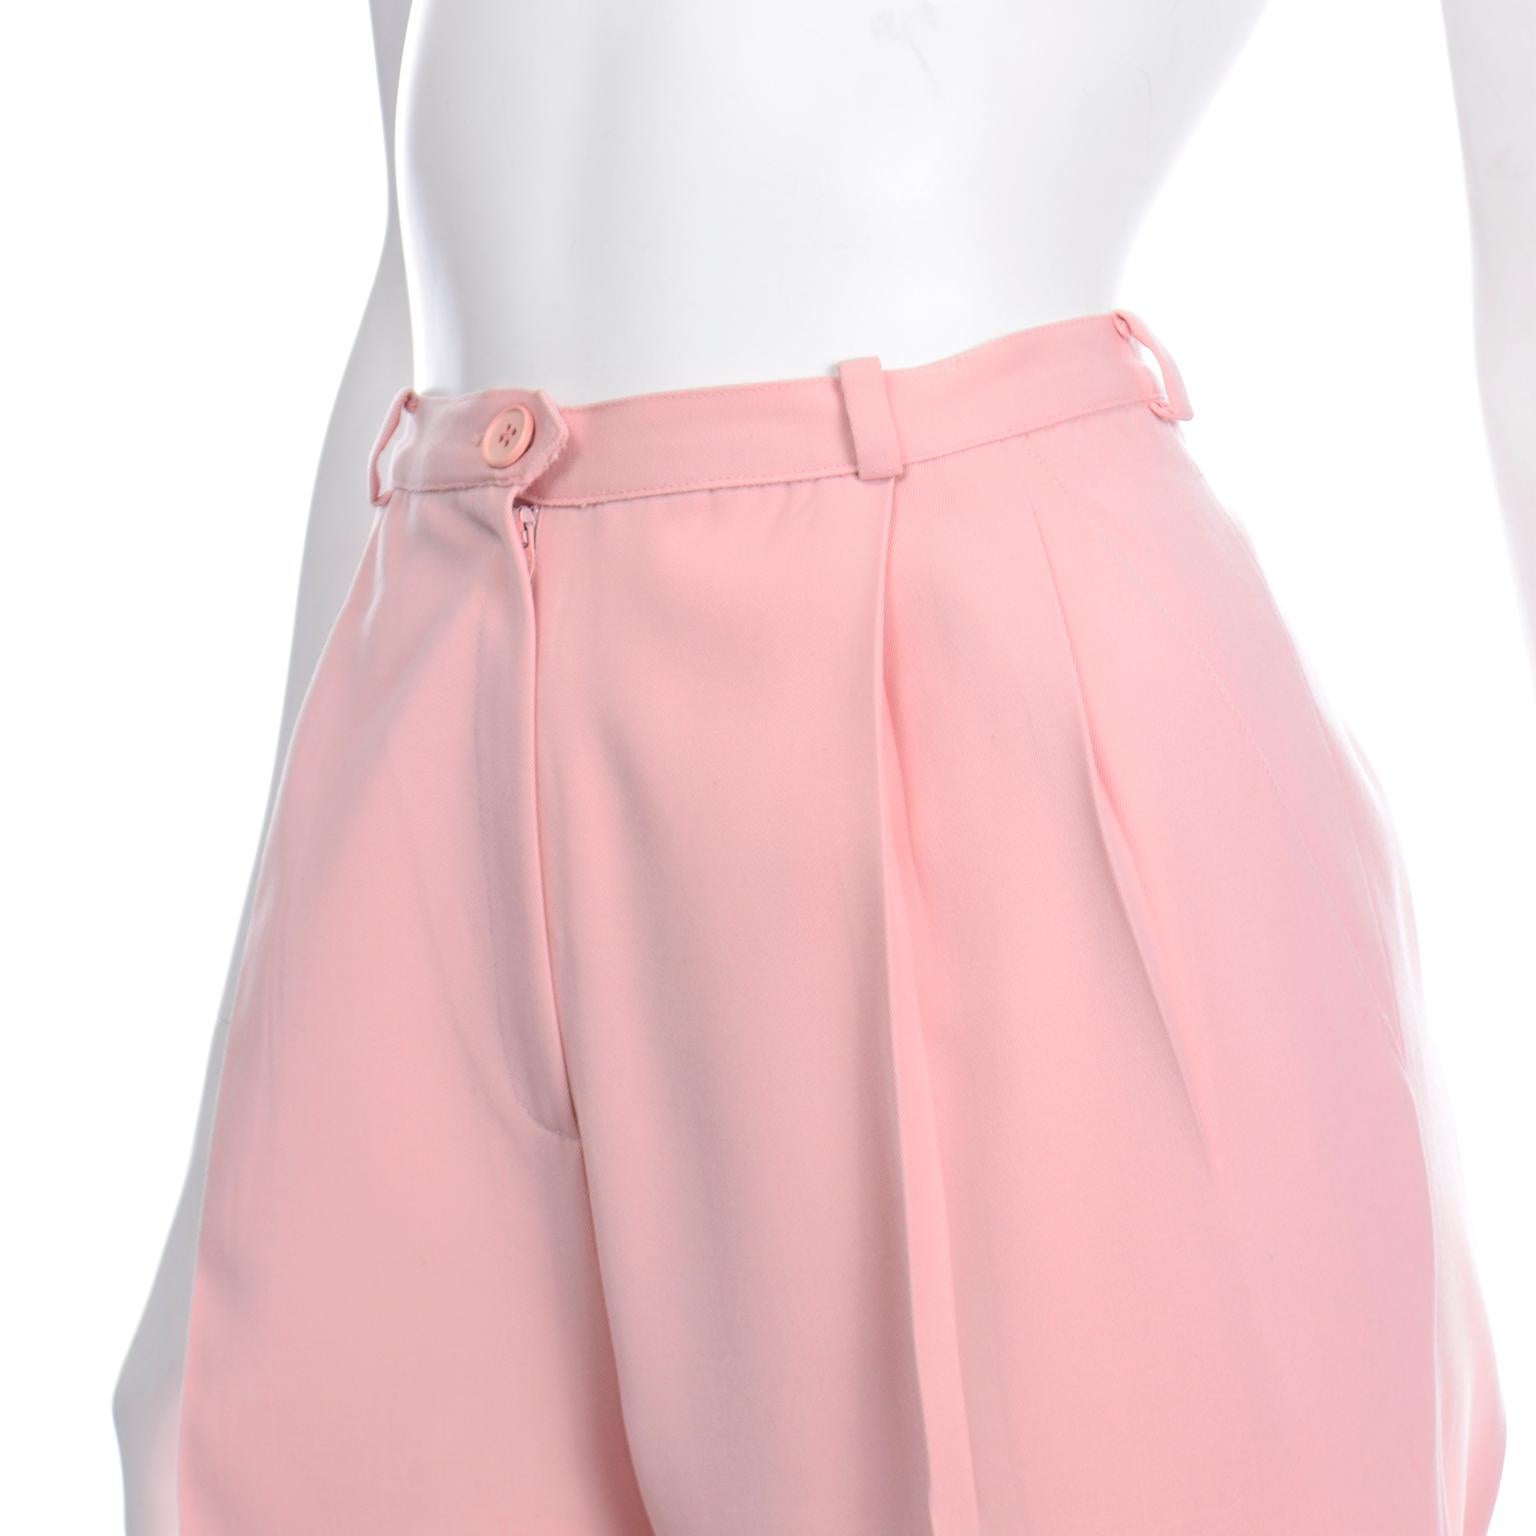 Women's Salvatore Ferragamo Pants Pink Spring Summer Weight Wool High Waist Trousers